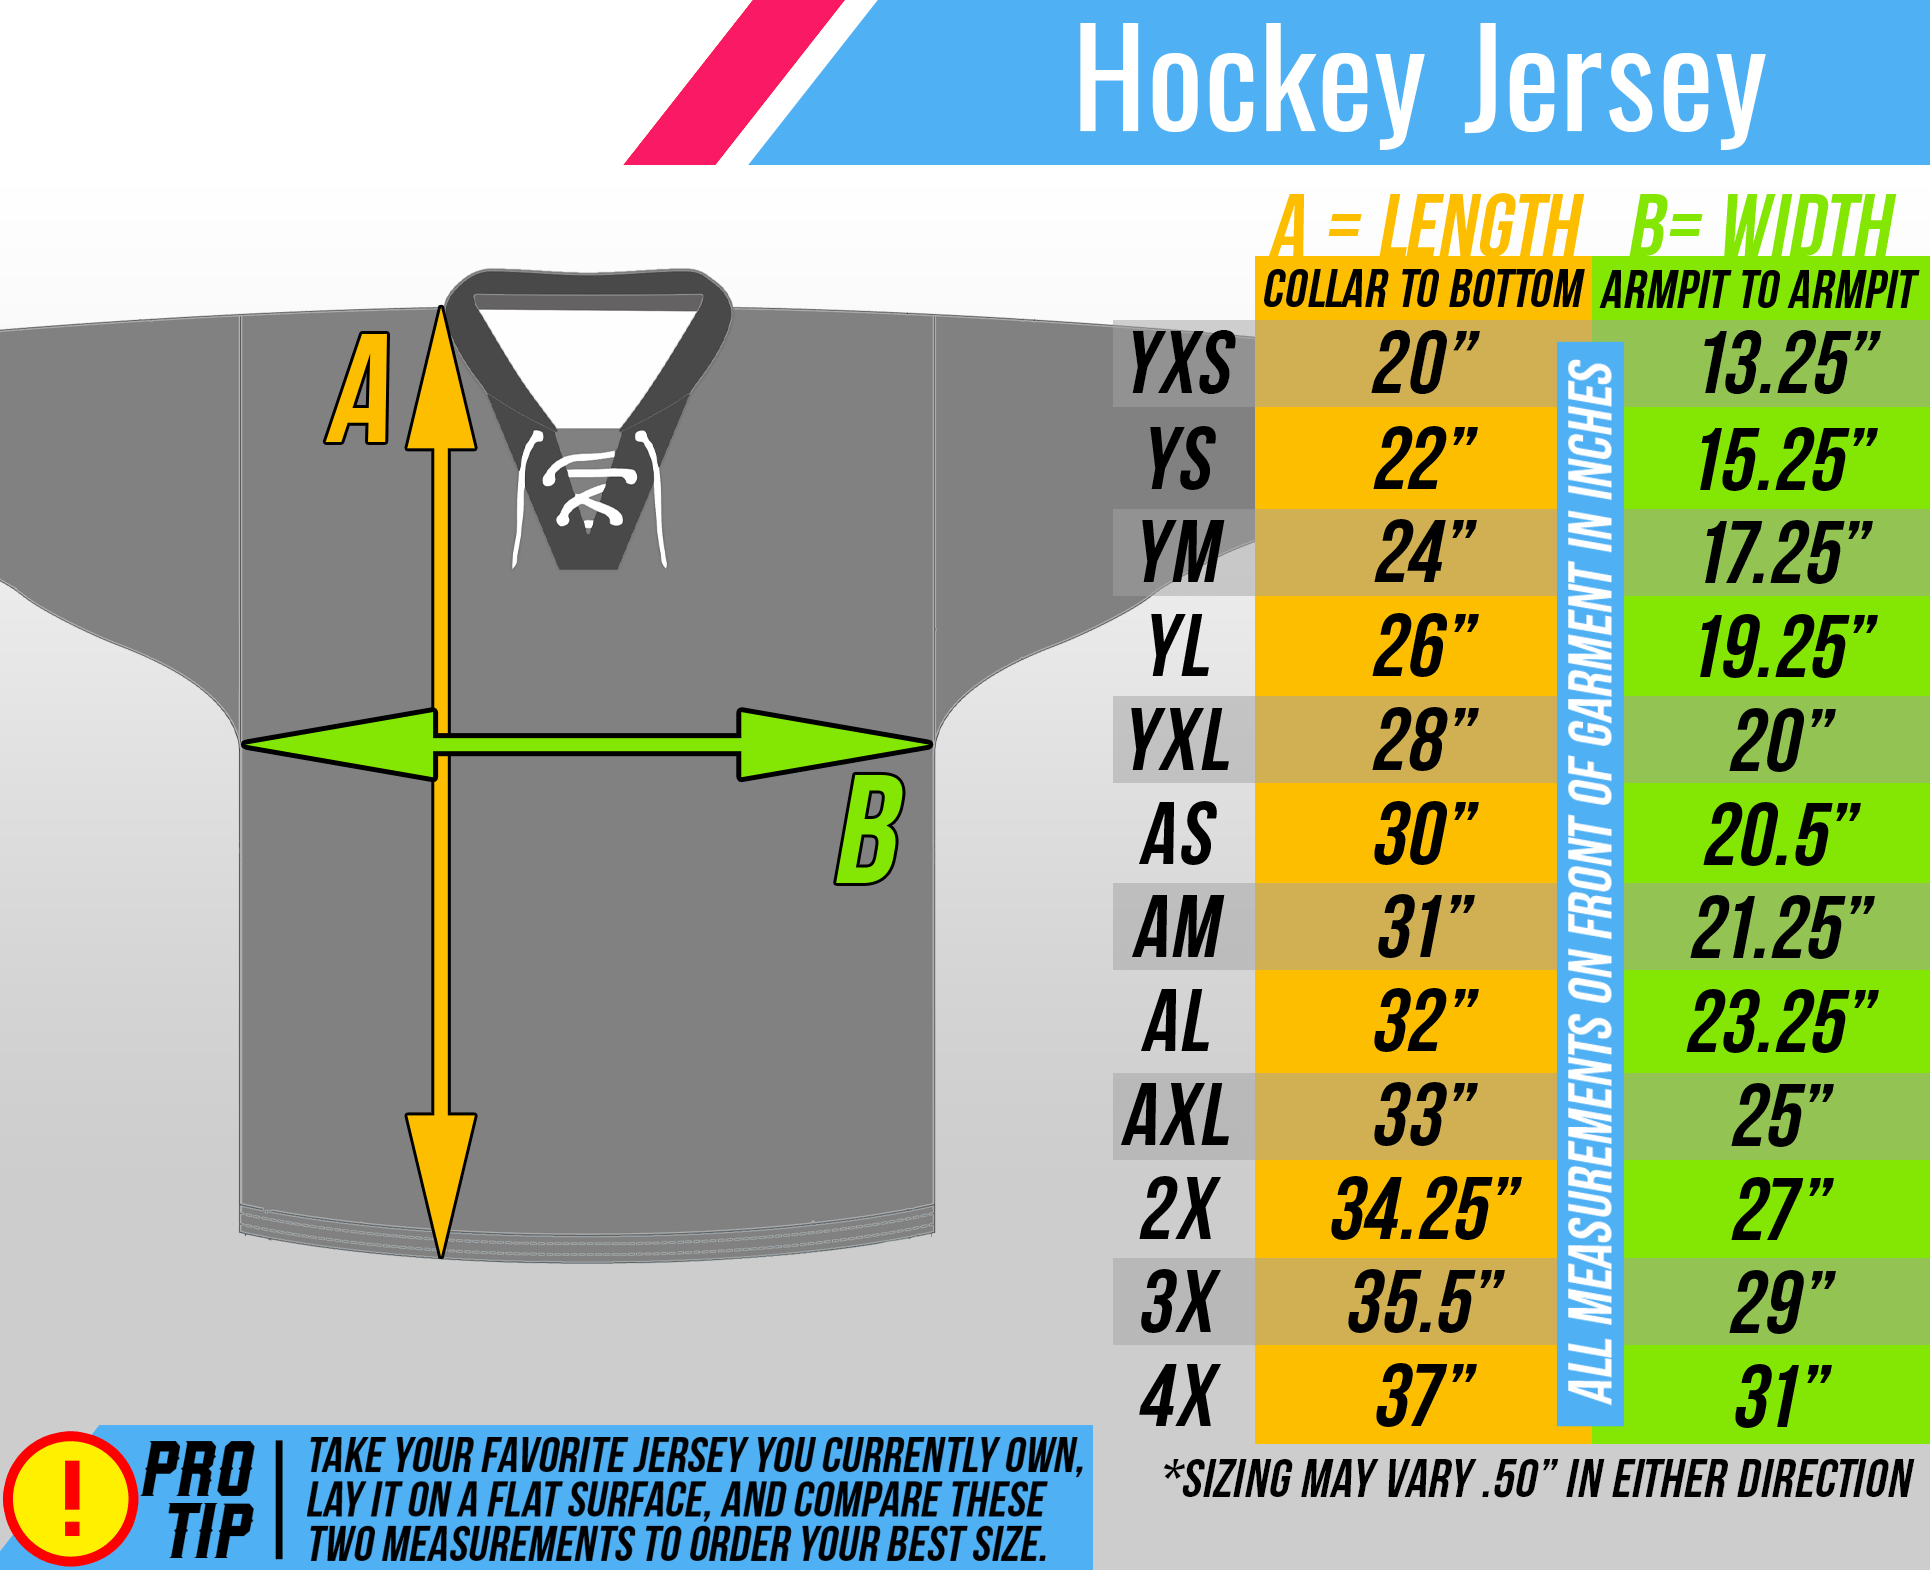 Ice Hockey Jersey Black, Hockey Jersey Ducks